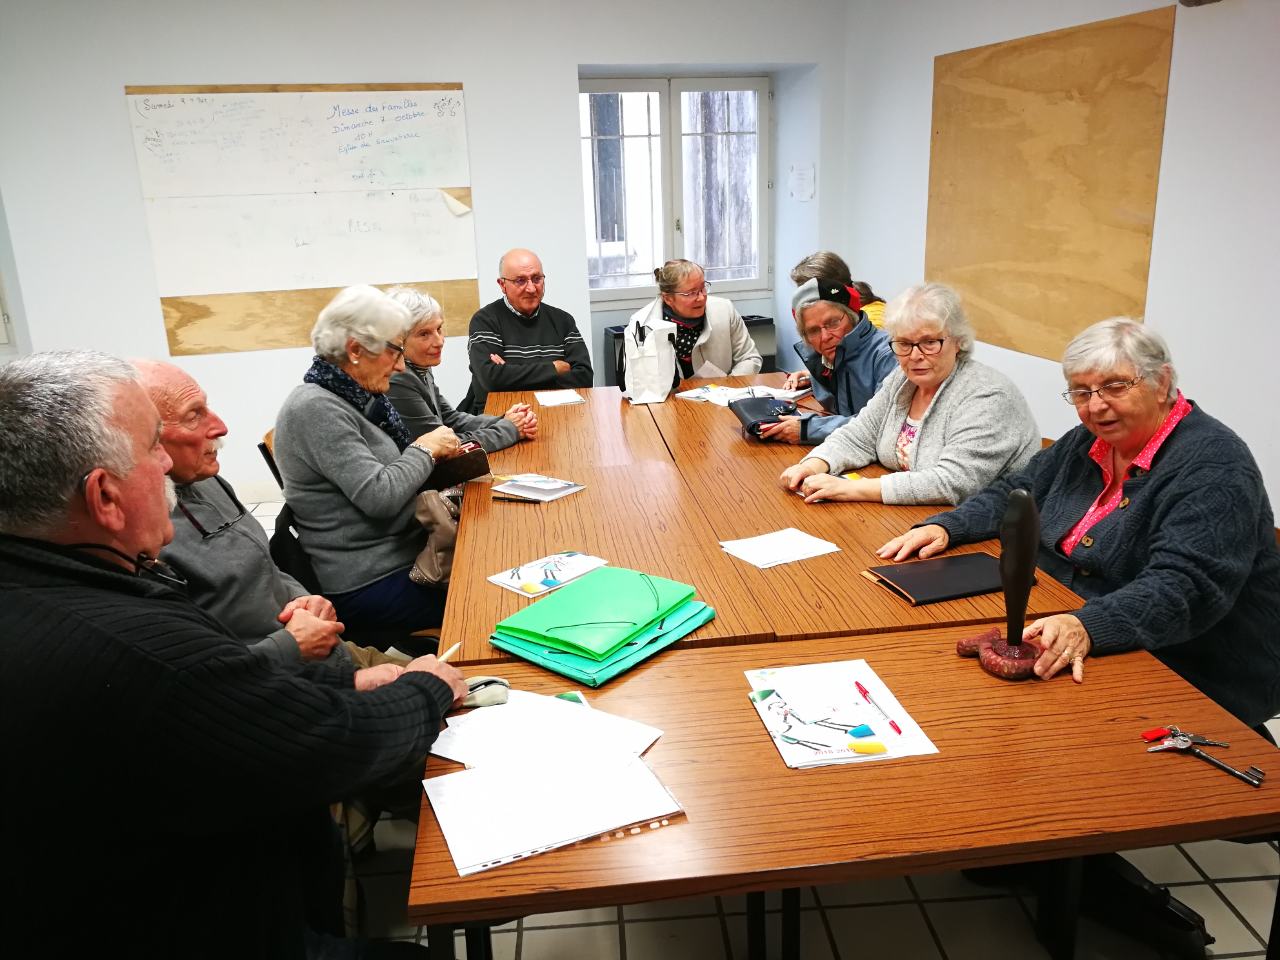 Une rencontre au MCR - Mouvement des chrétiens retraités